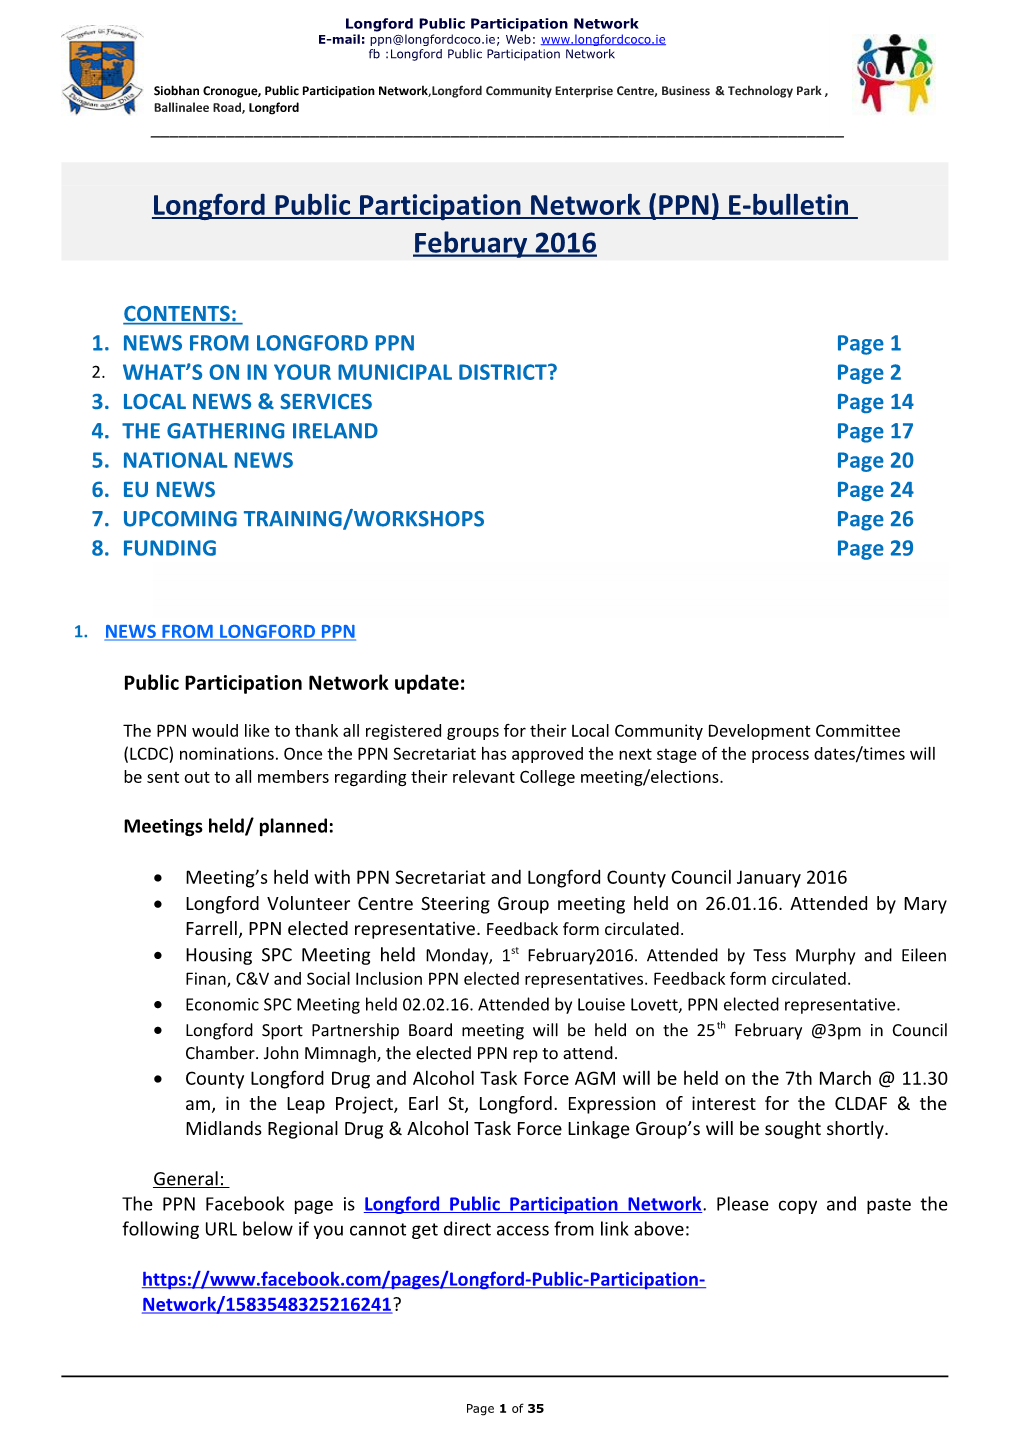 Longford Public Participation Network (PPN) E-Bulletin